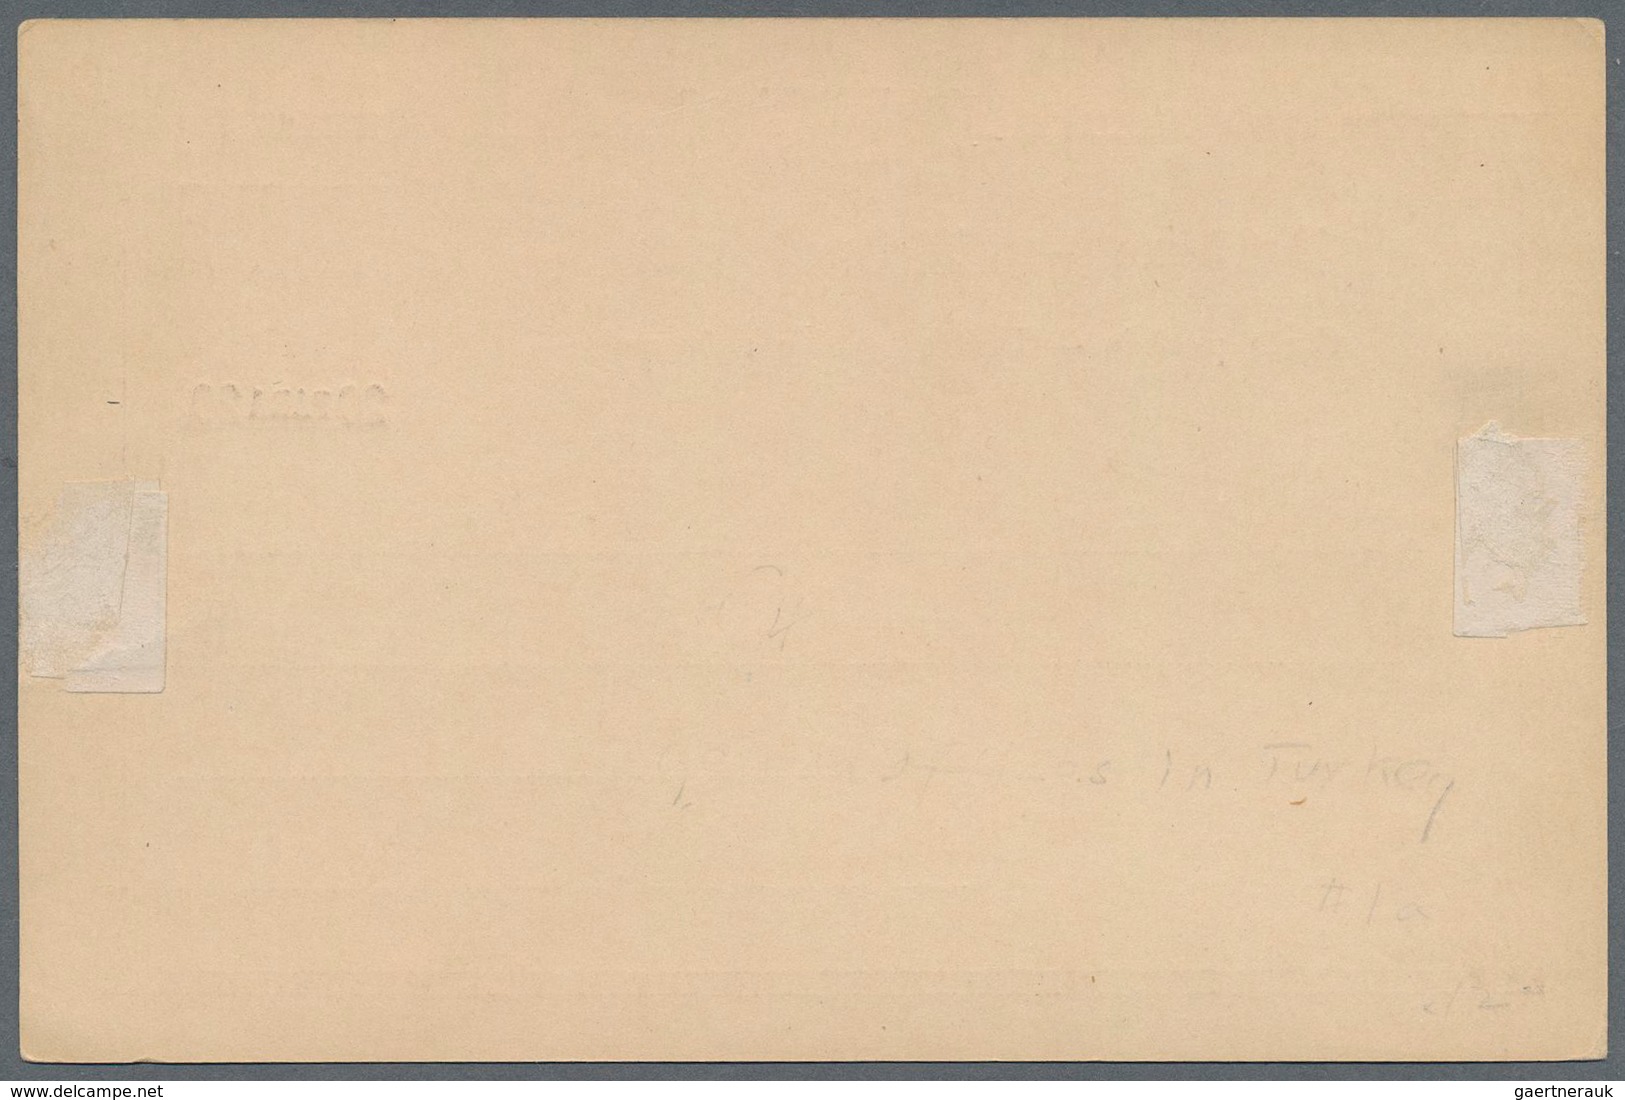 Deutsche Post In Der Türkei - Ganzsachen: 1889. Postkarte 20 Para Auf 10 Pf In Type III "Bemerkung H - Turkey (offices)